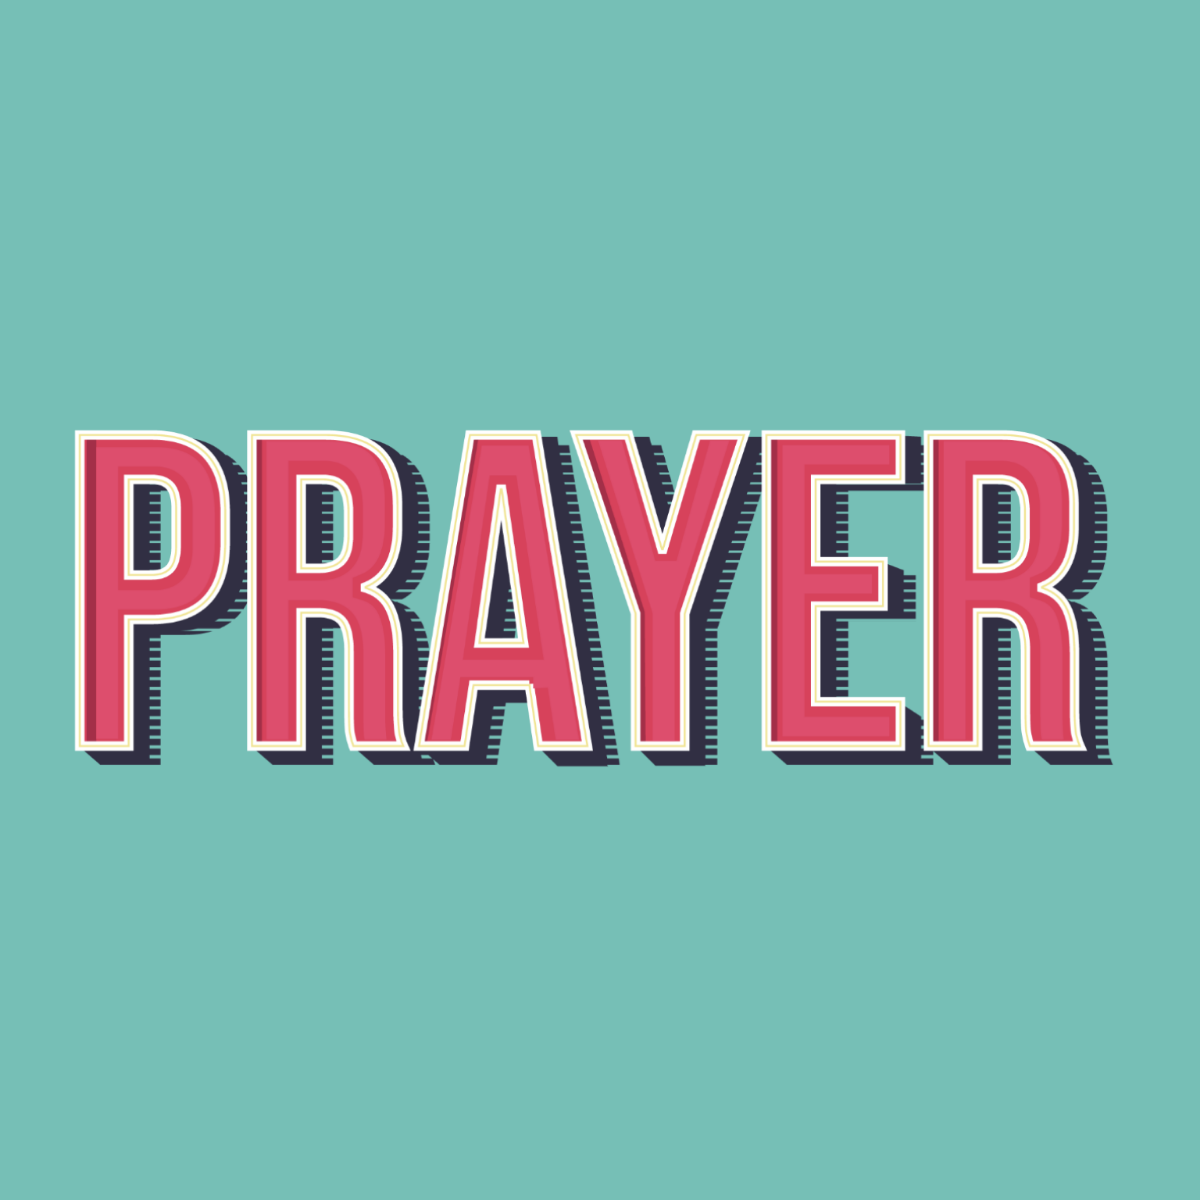 Free Prayer Text Effect Template